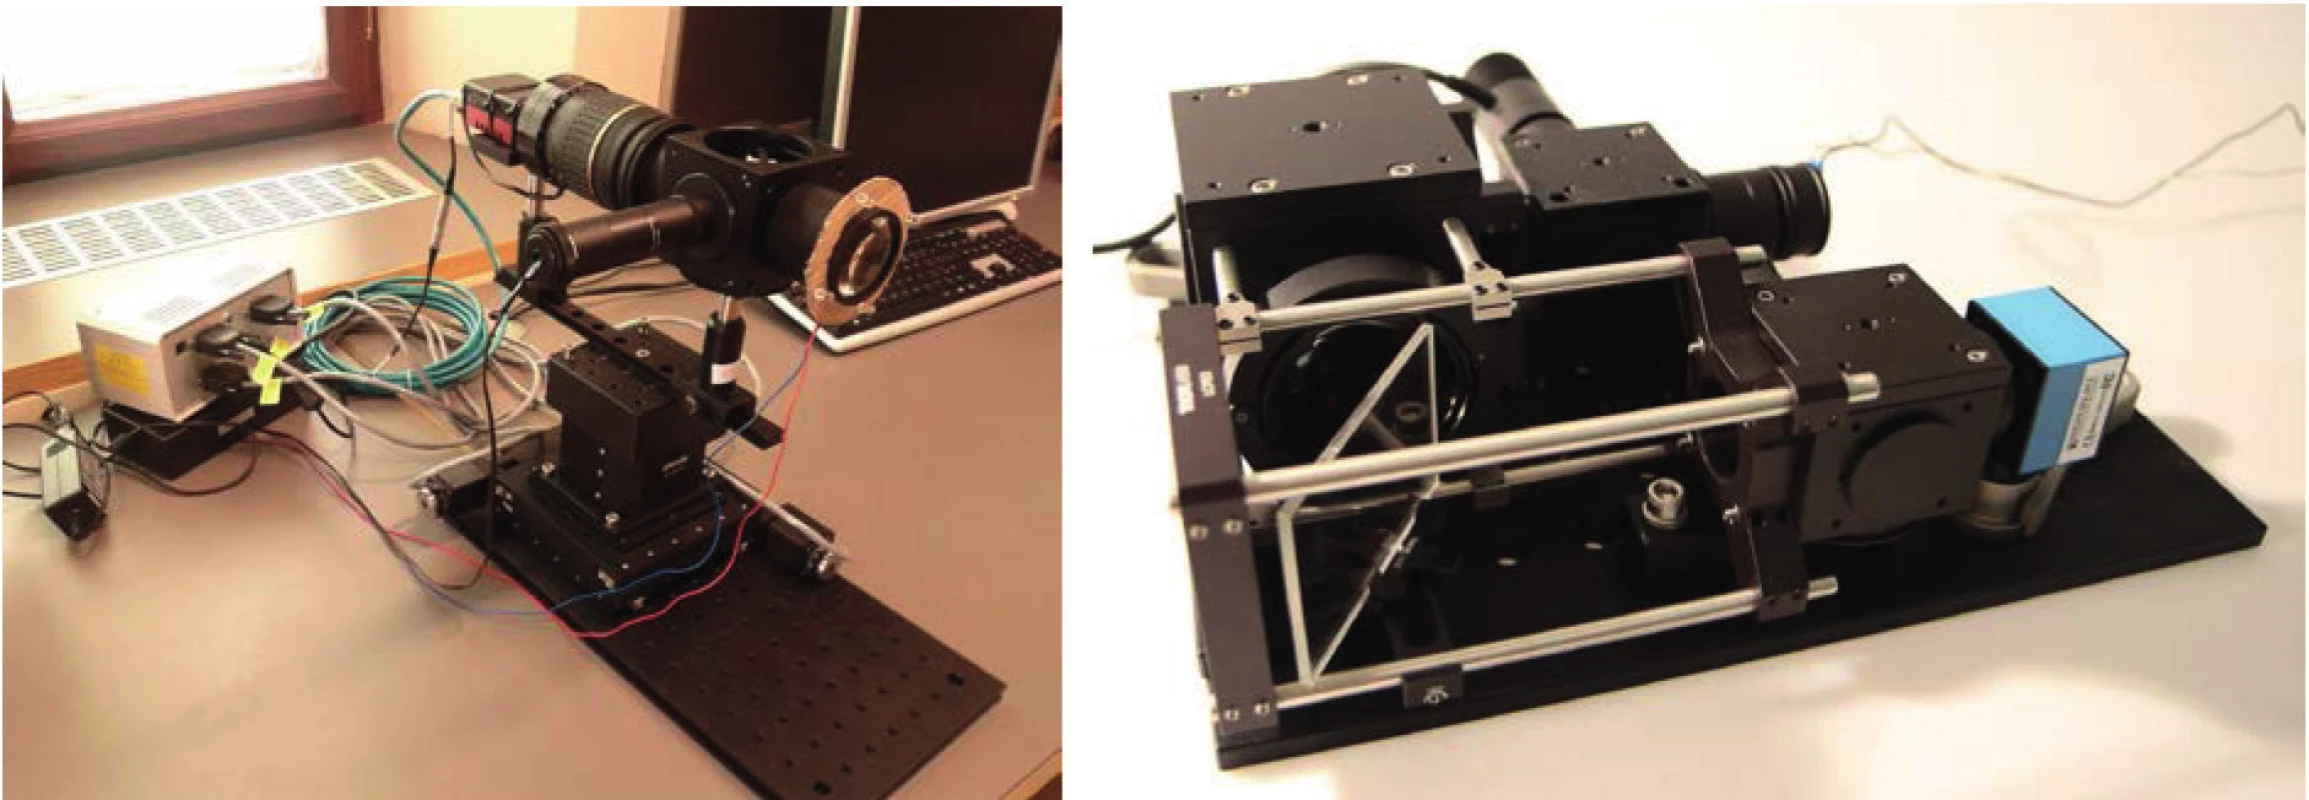 Ukázka laboratorního zařízení první verze (vlevo) a druhé verze (vpravo)